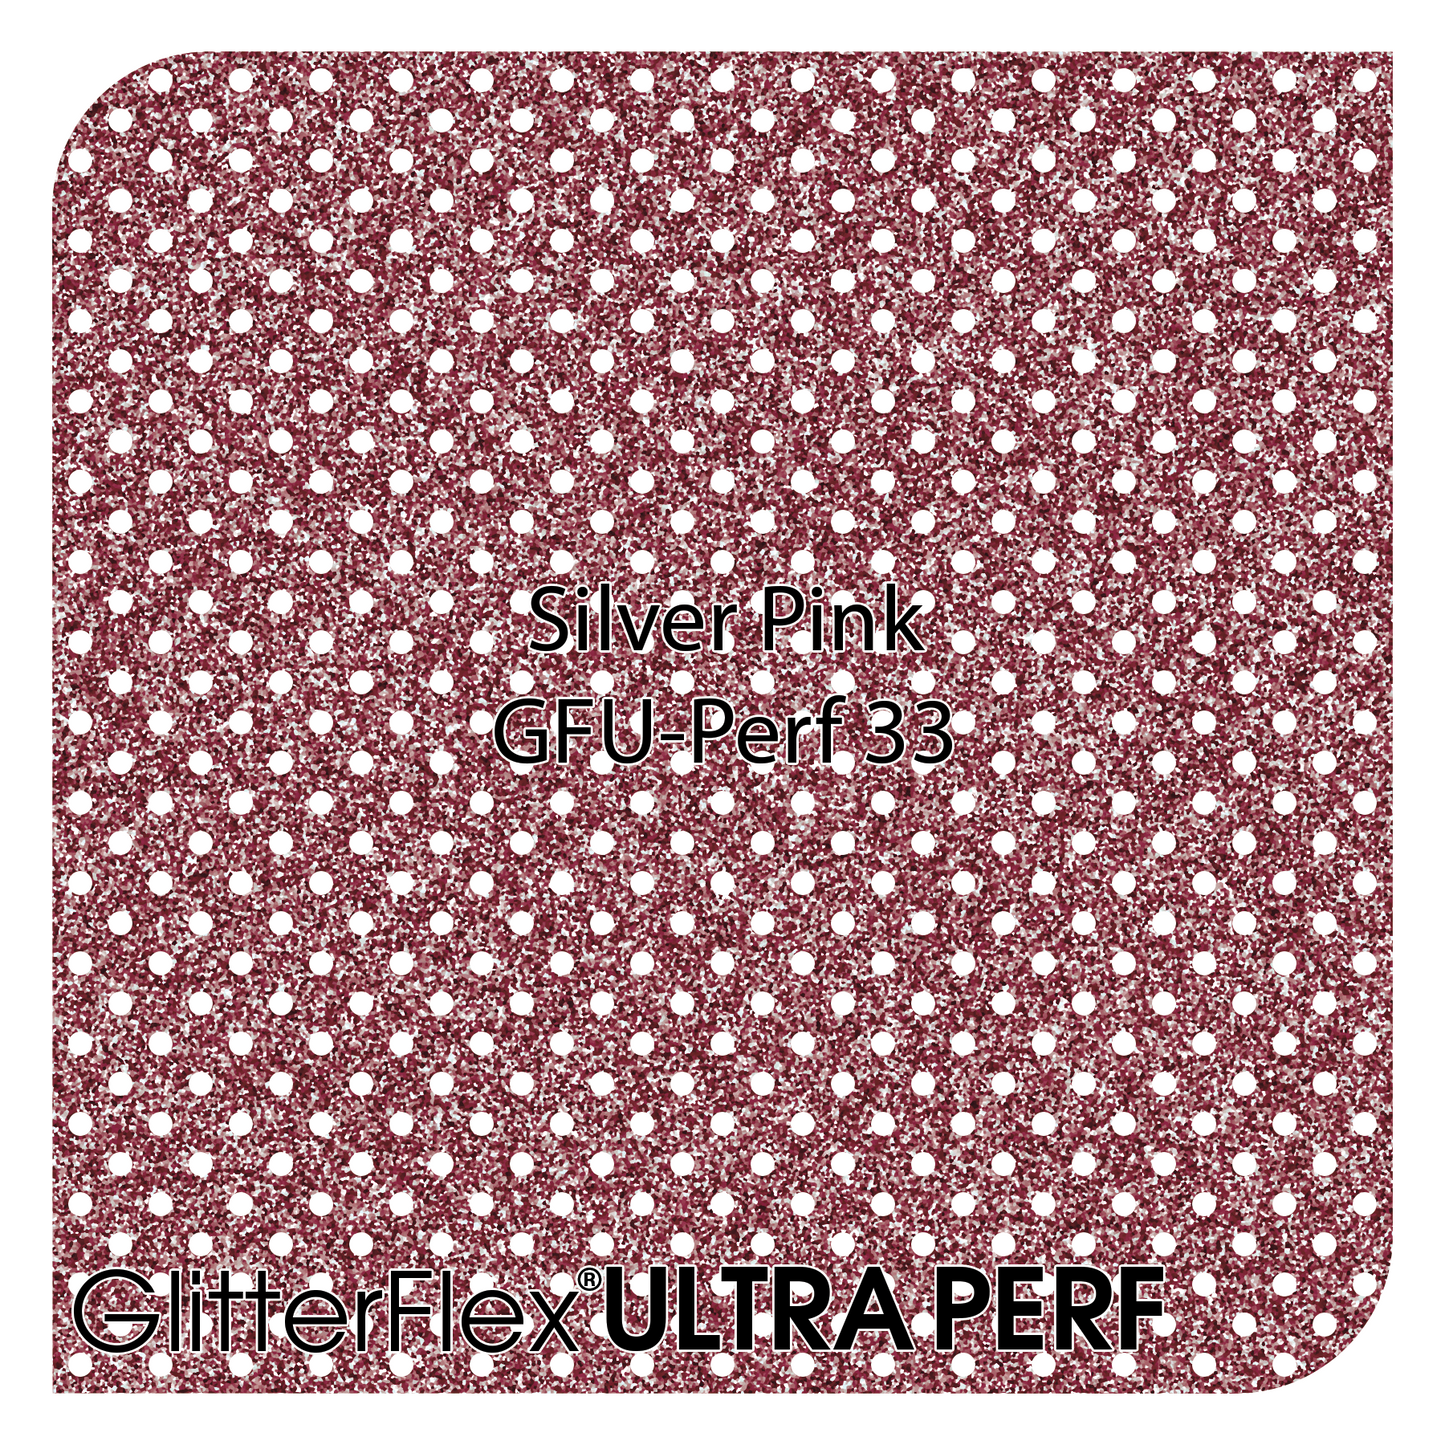 GLITTERFLEX® ULTRA PERF - 20" x 25 Yard (75 Feet)